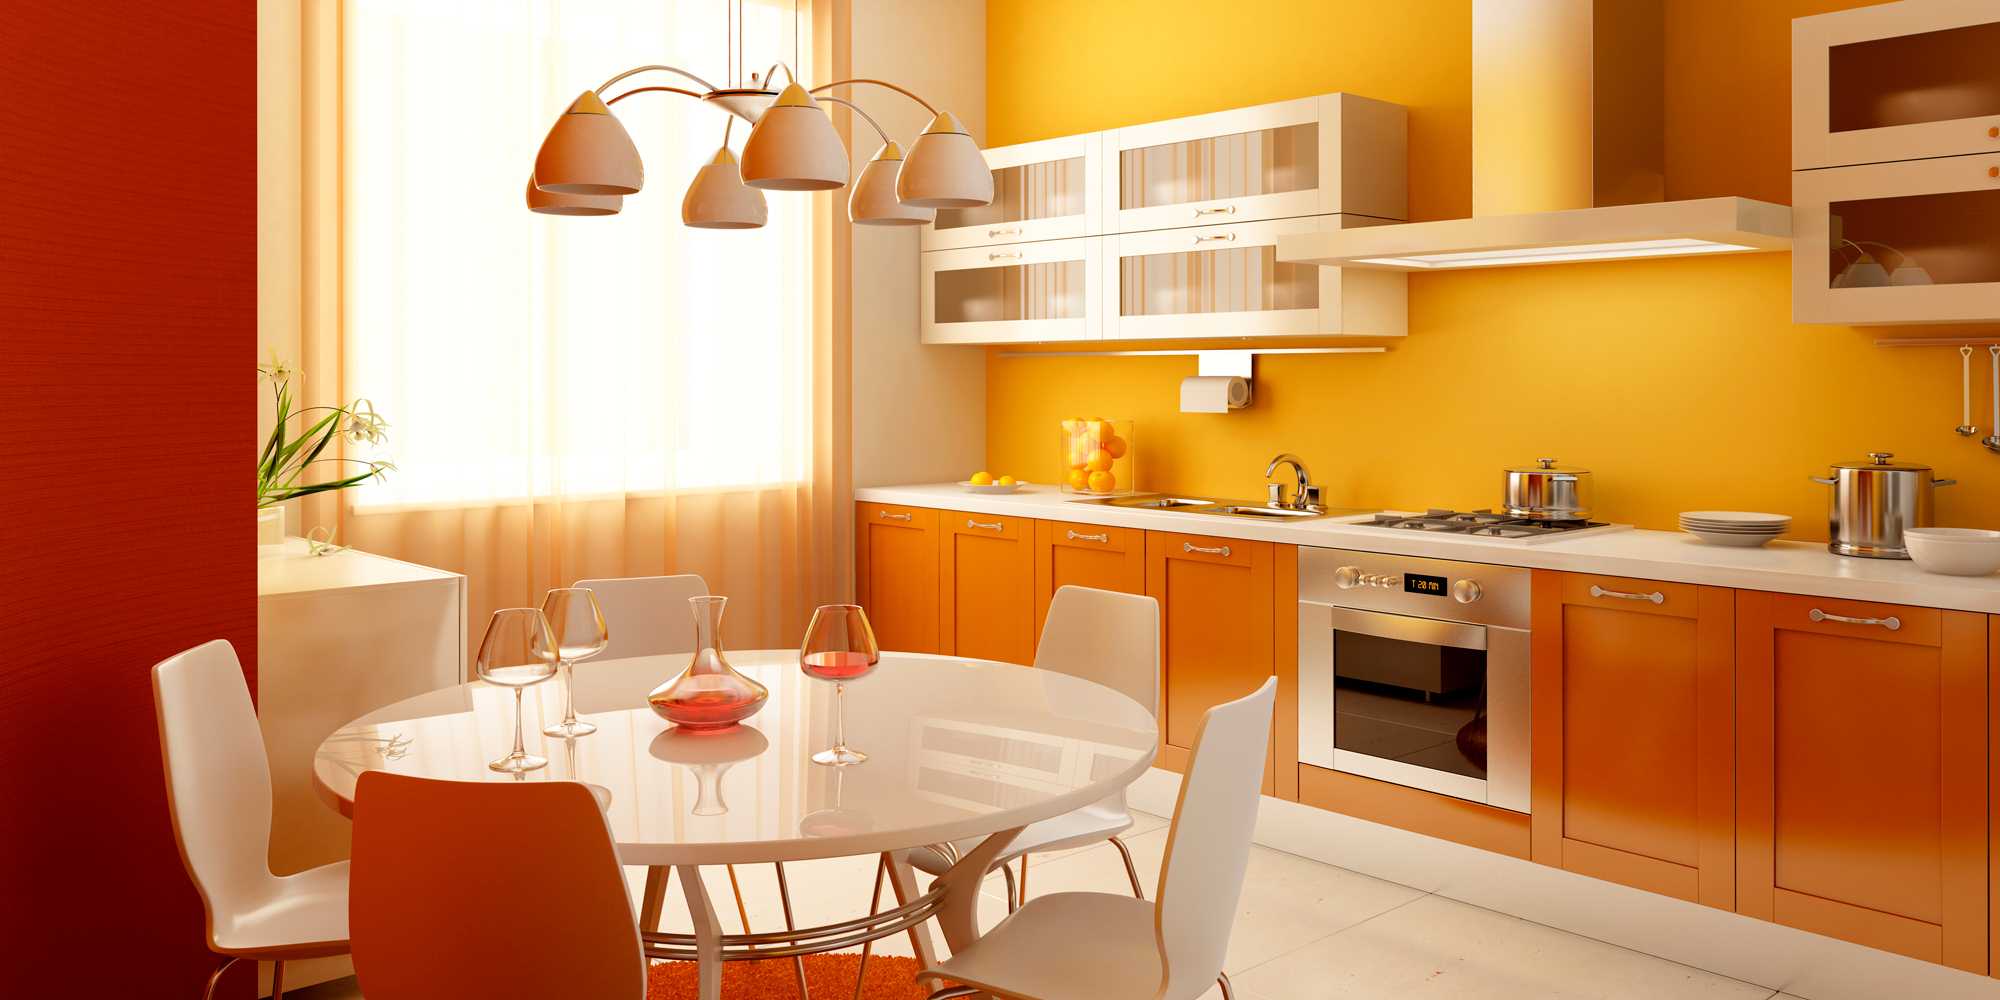 kombinace jasně oranžové ve stylu ložnice s jinými barvami